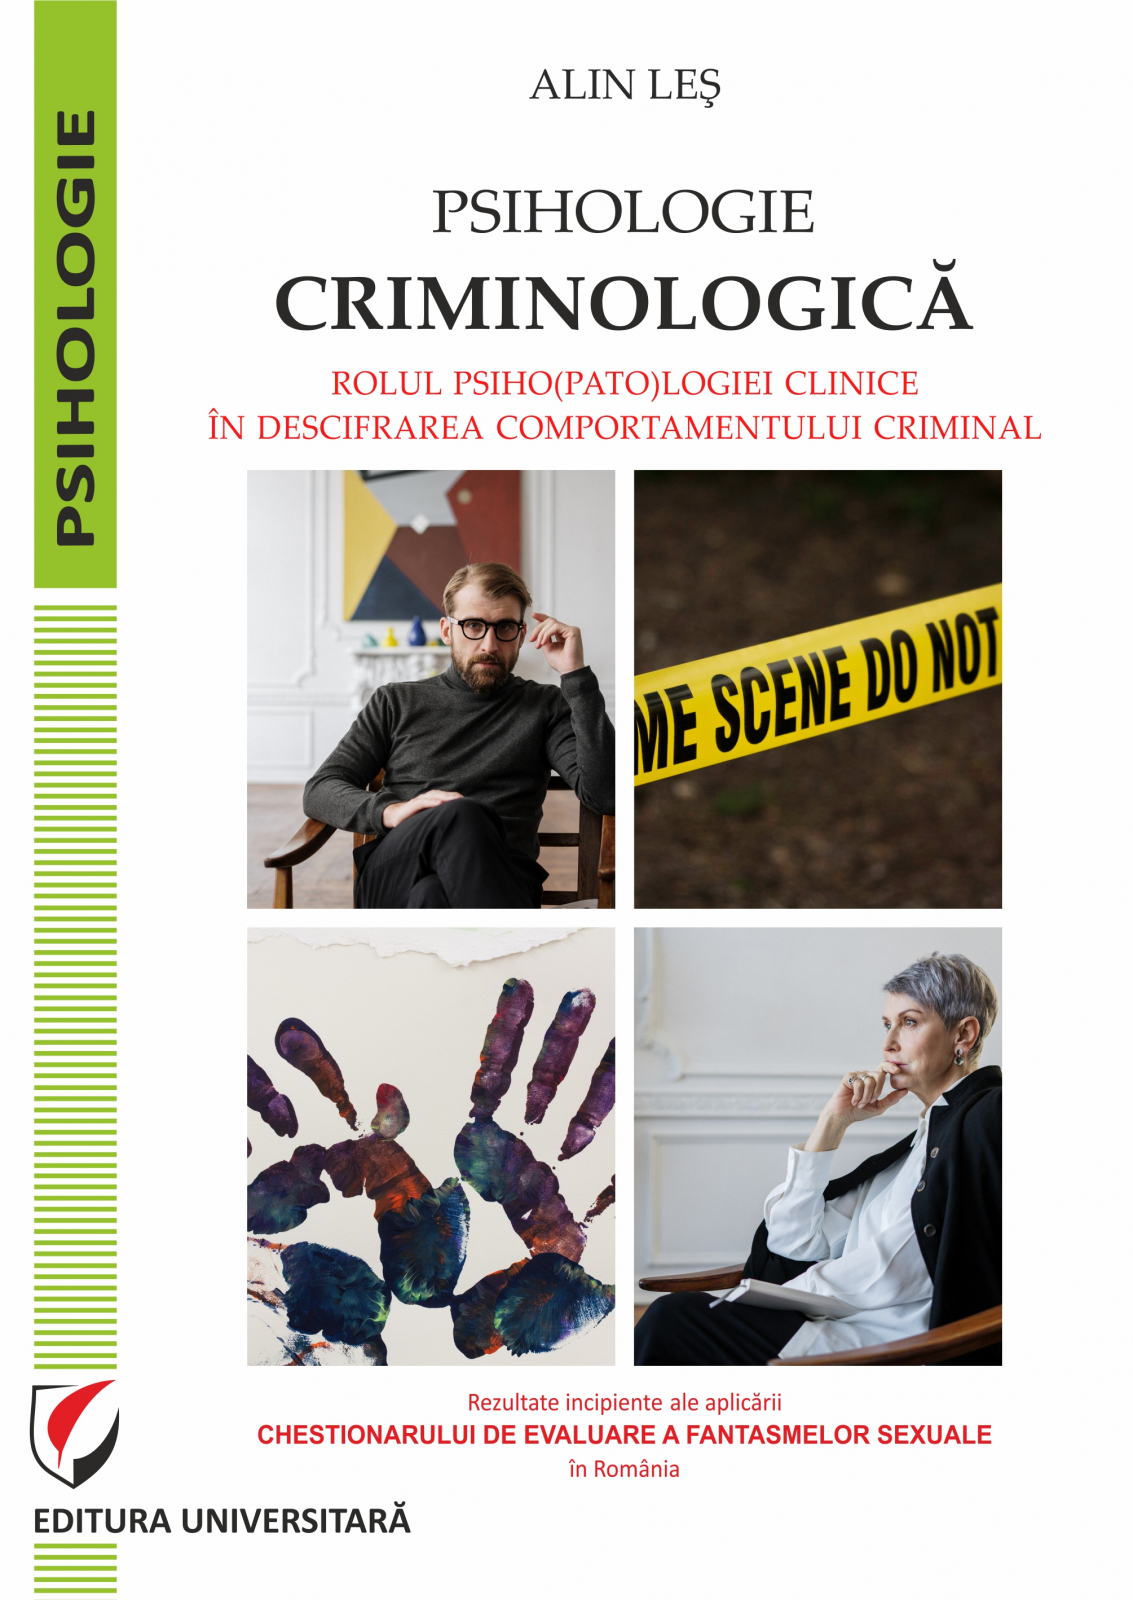 Psihologie criminologica | Alin Les​ carturesti.ro